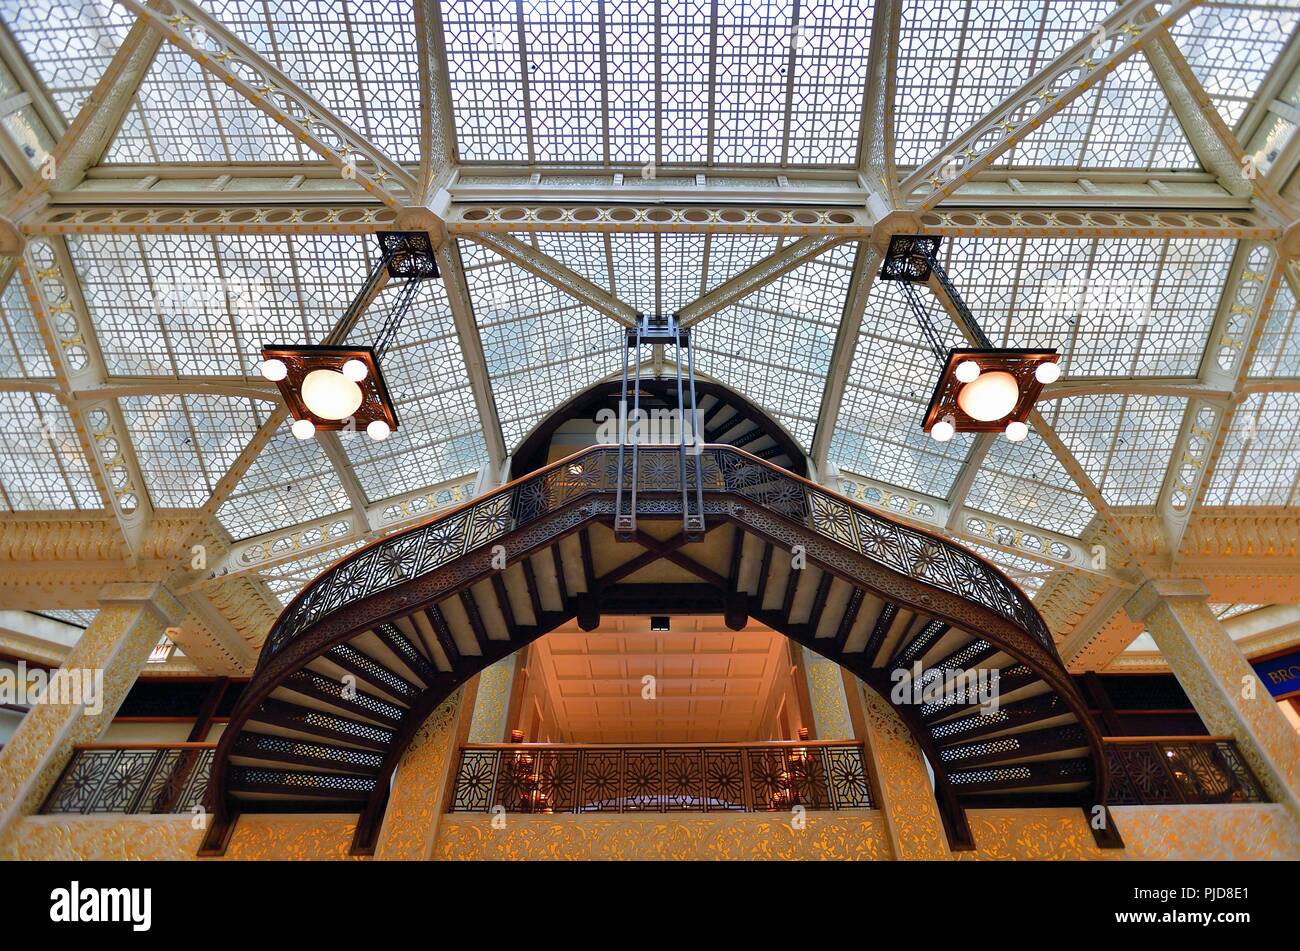 Chicago, Illinois, Stati Uniti d'America. Il lucernario e una delle scale artistica in vista all'interno della lobby di The Rookery Building. Foto Stock